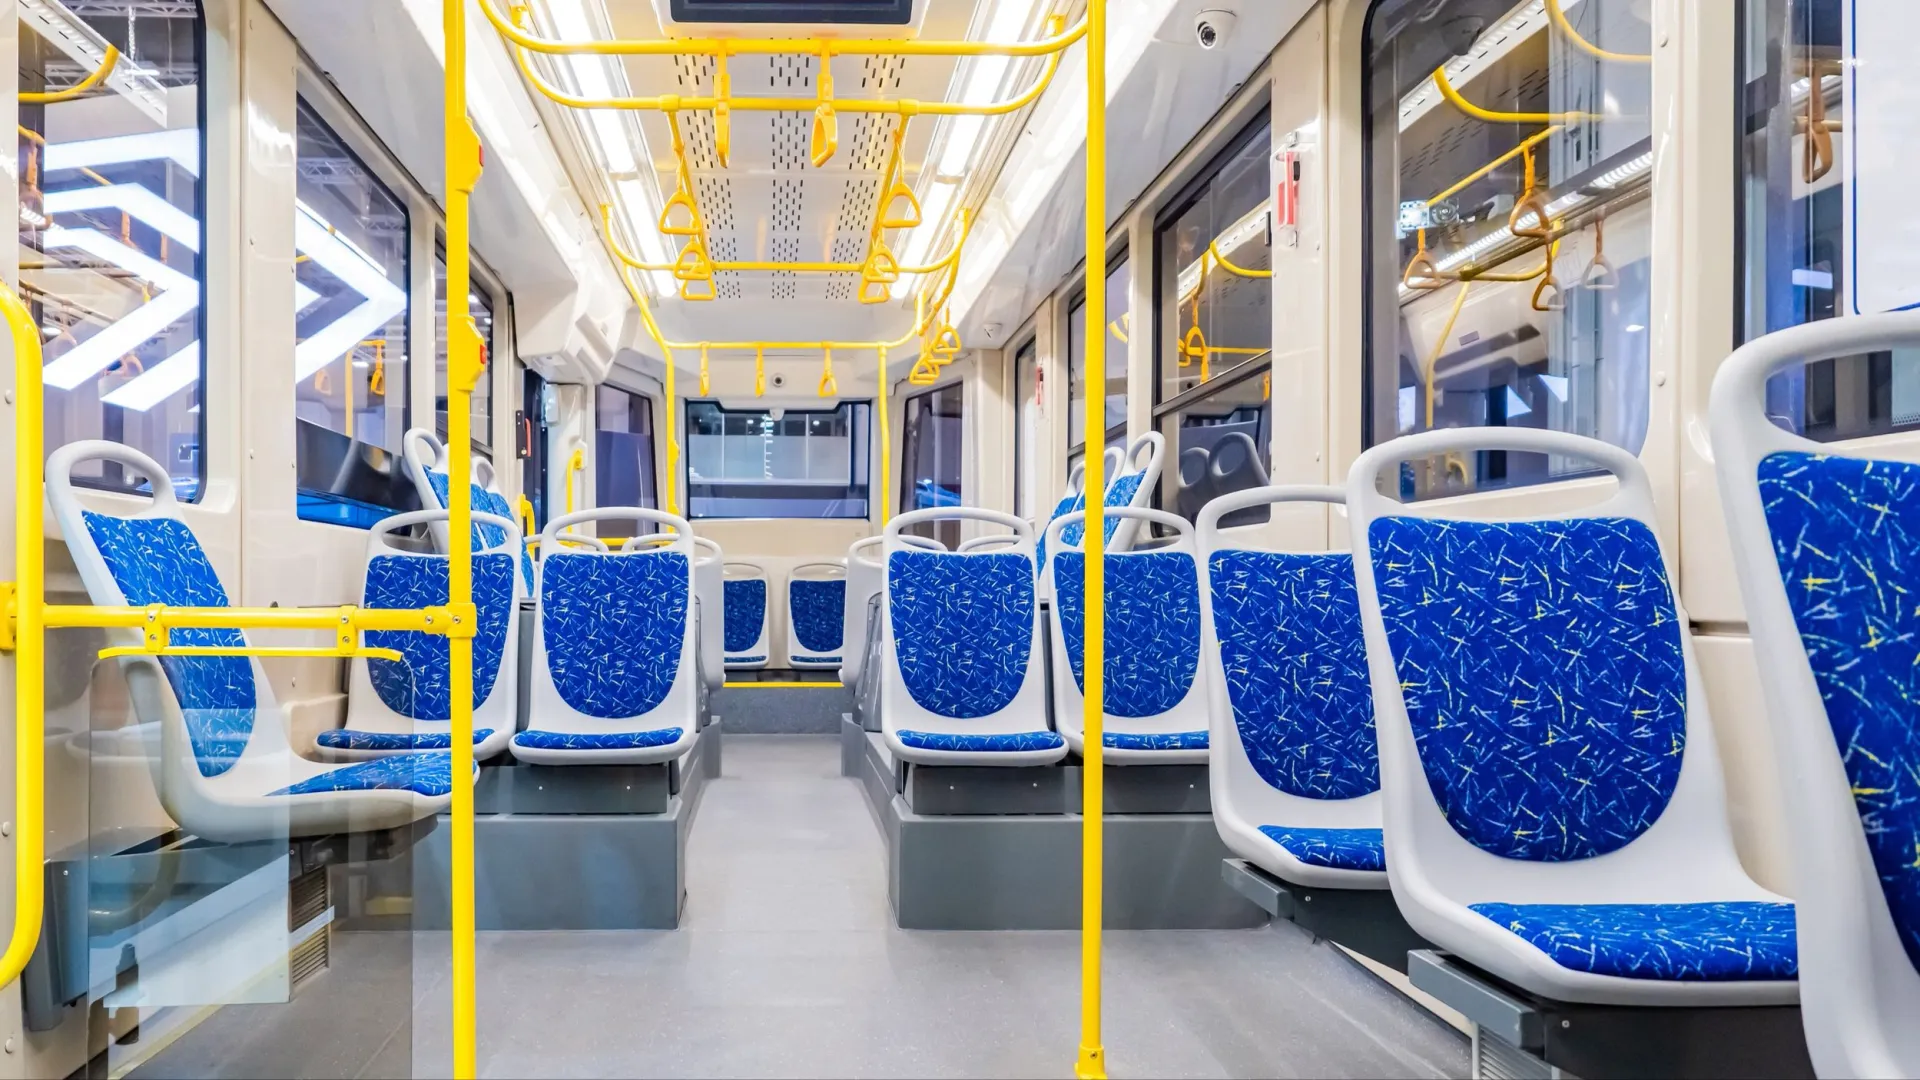 Синий часто используют для декора в общественном транспорте. Фото: FOTOGRIN/Shutterstock/Fotodom